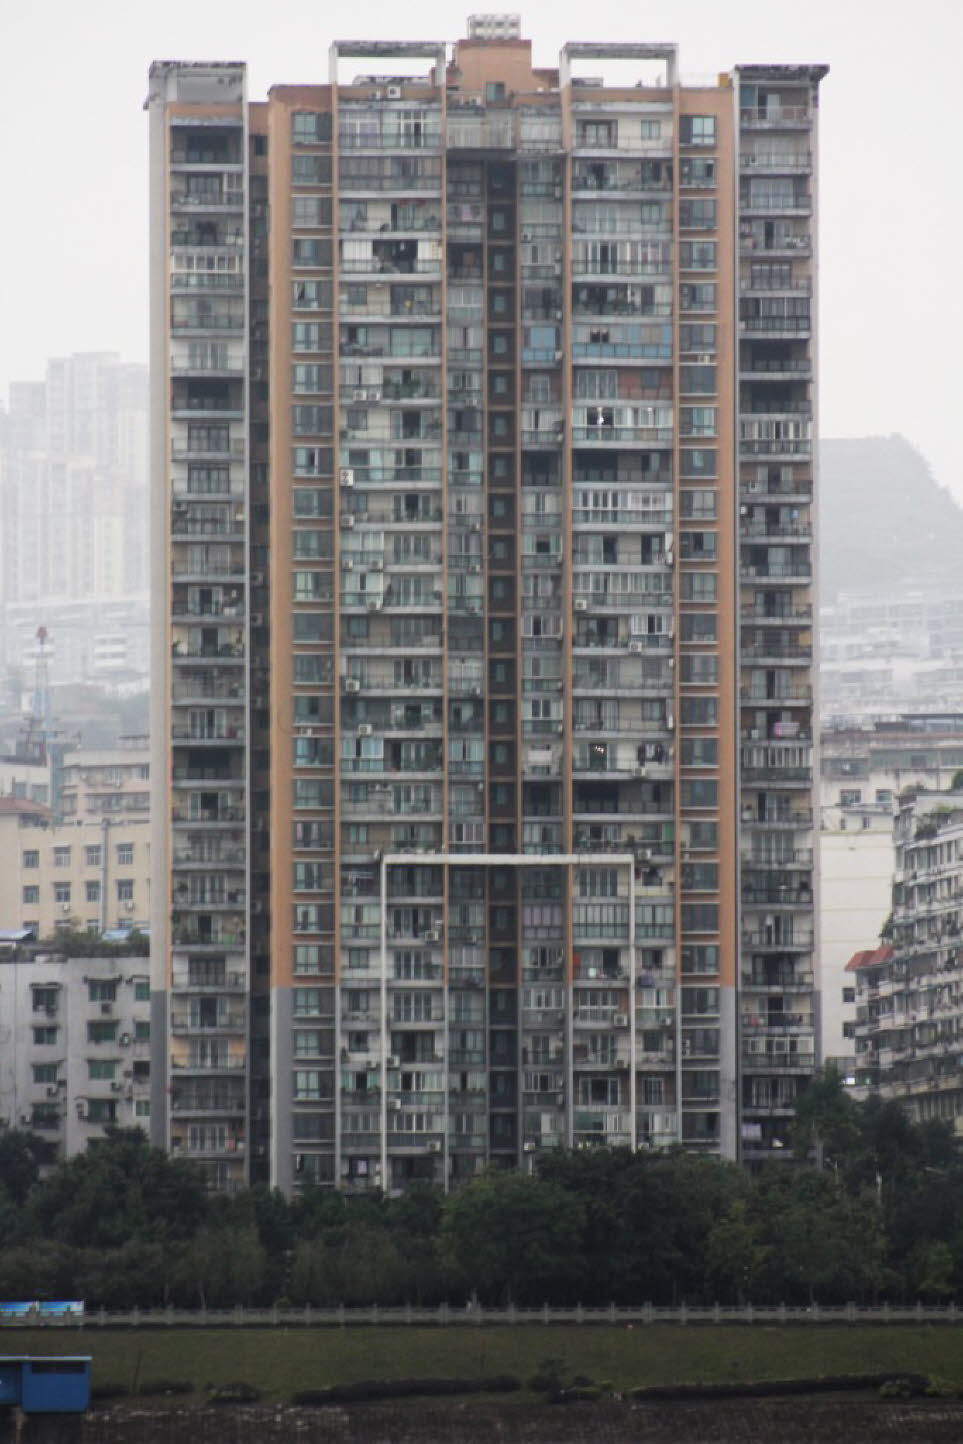 Chongqing / China: Viele Elemente der modernen Stadtplanungspolitik hatten verheerende Folgen für die Bevölkerung und schufen mehr Probleme, als sie lösten. Fast alle historischen Häuser der auf steilen Hügeln erbauten und von ebensolchen umgebenen Bergst
